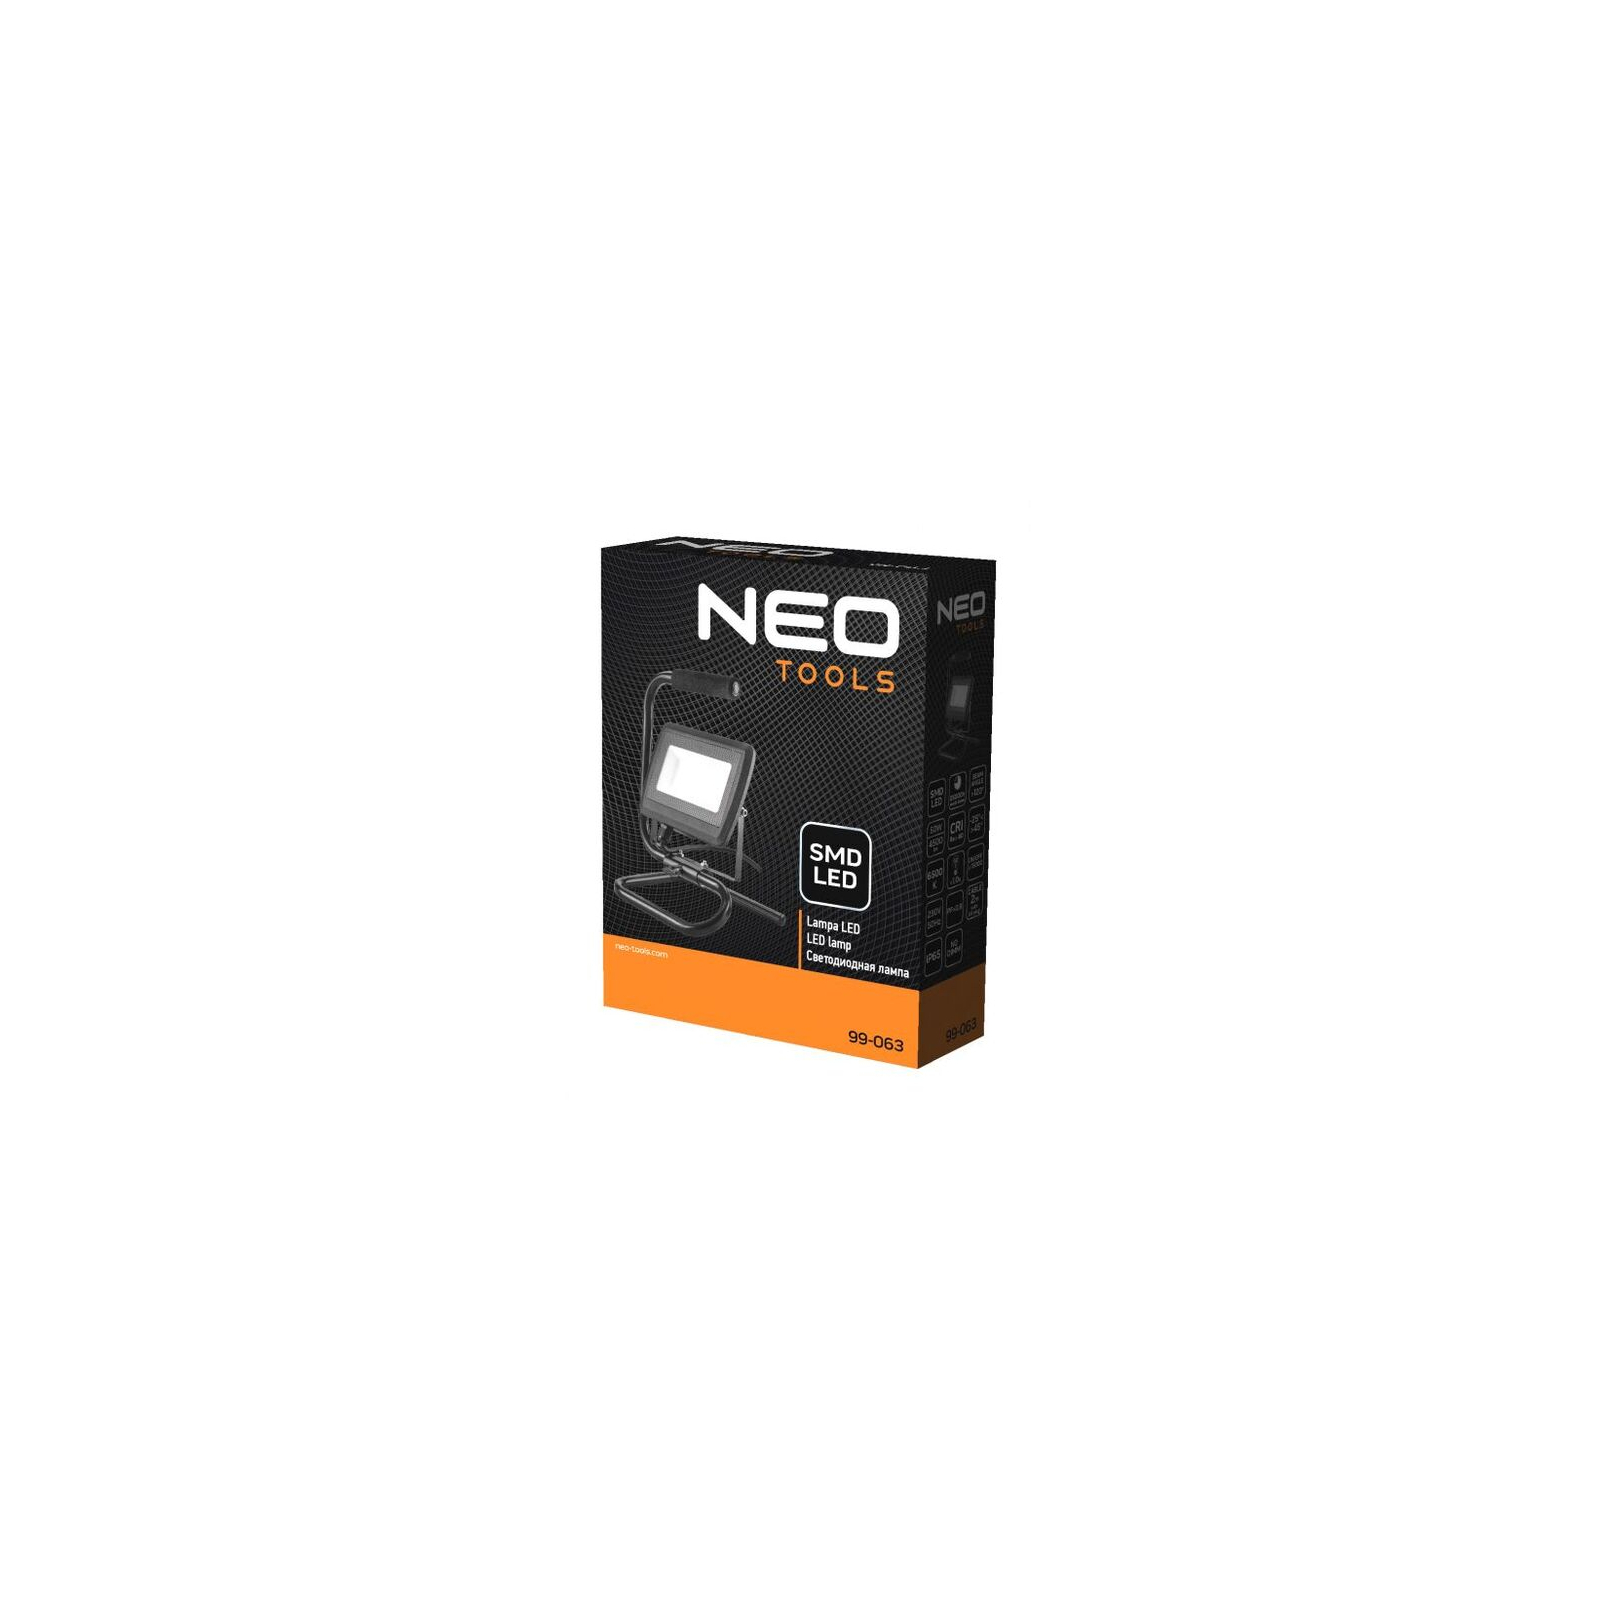 Прожектор Neo Tools алюминий 220В 50Вт 4500 люмен SMD LED, кабель 2 м с вилкой (99-063) изображение 5